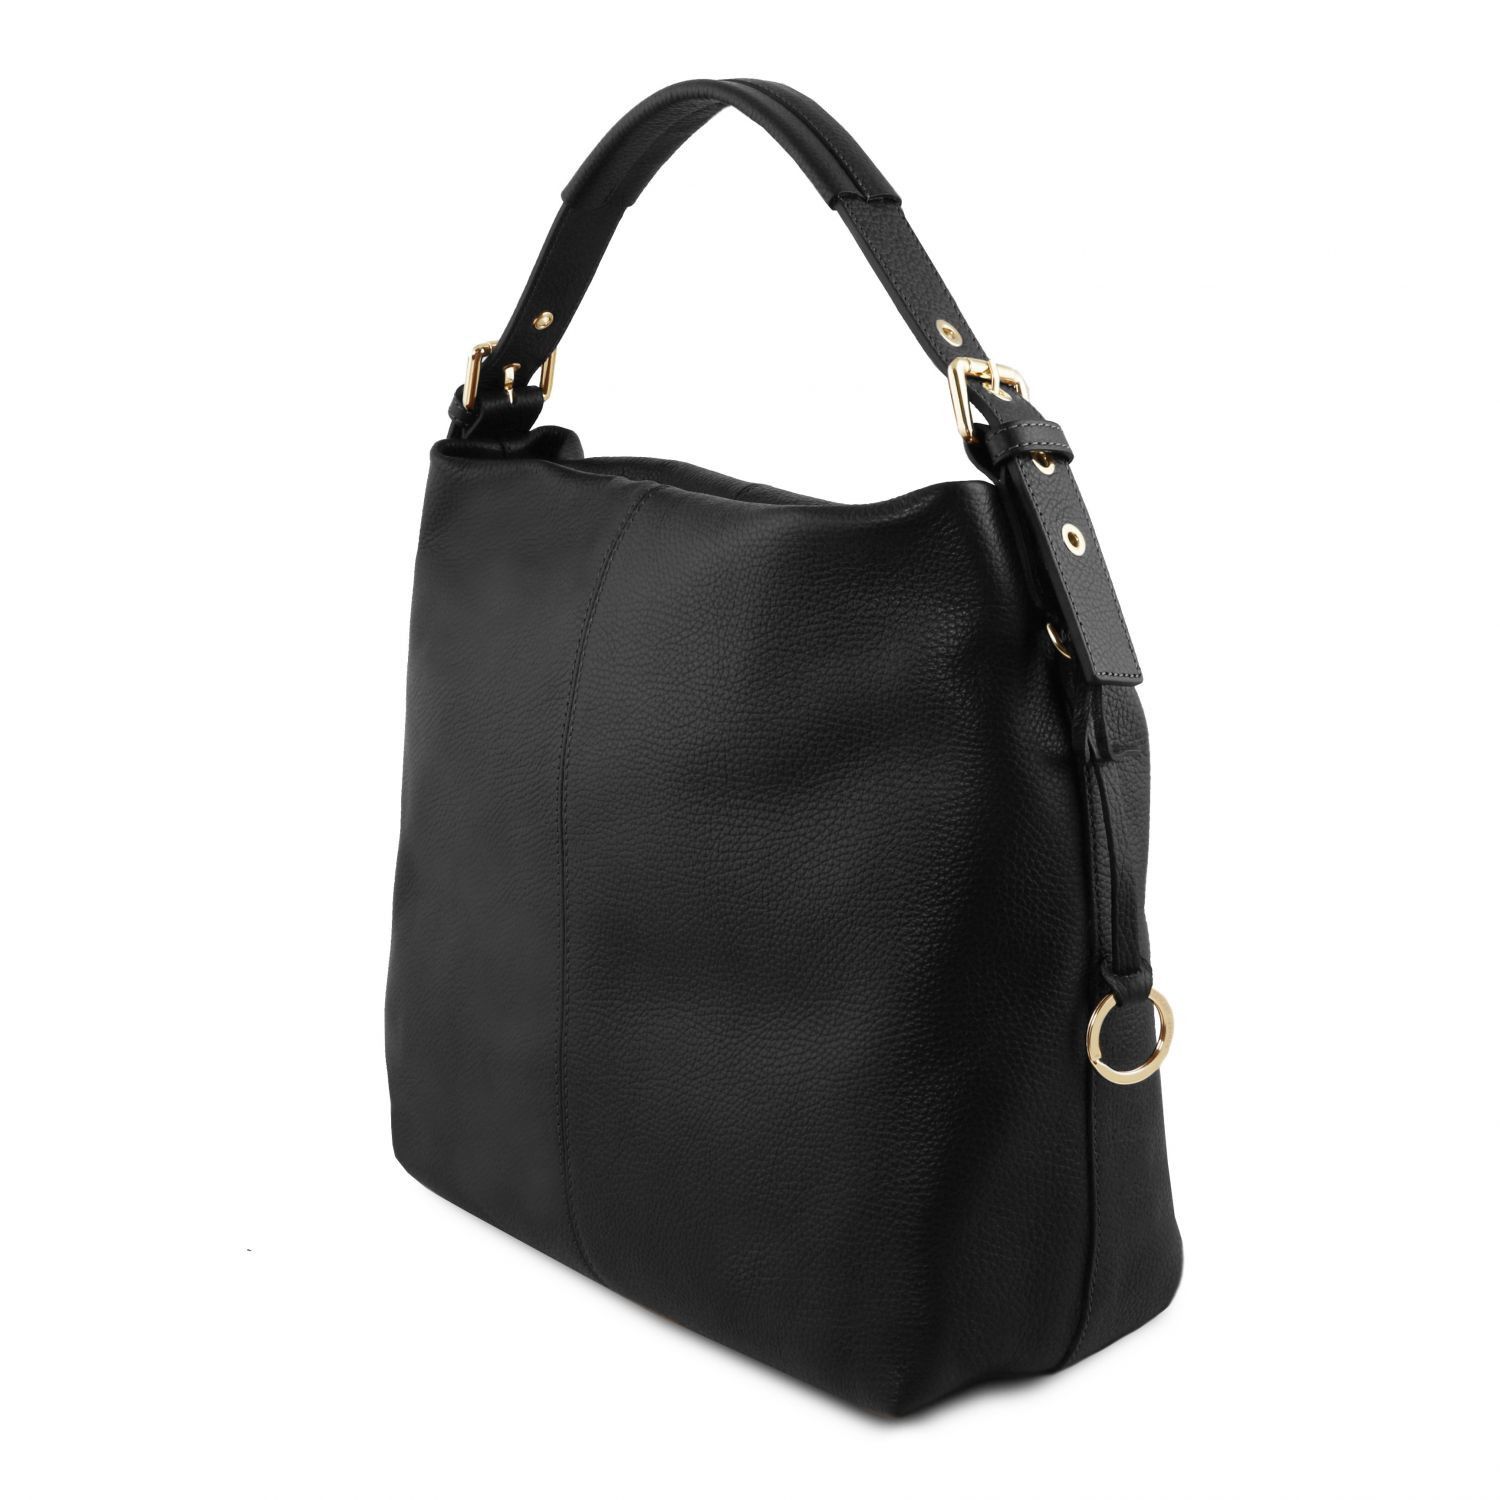 TL Bag Soft Leather Hobo bag Black TL141719